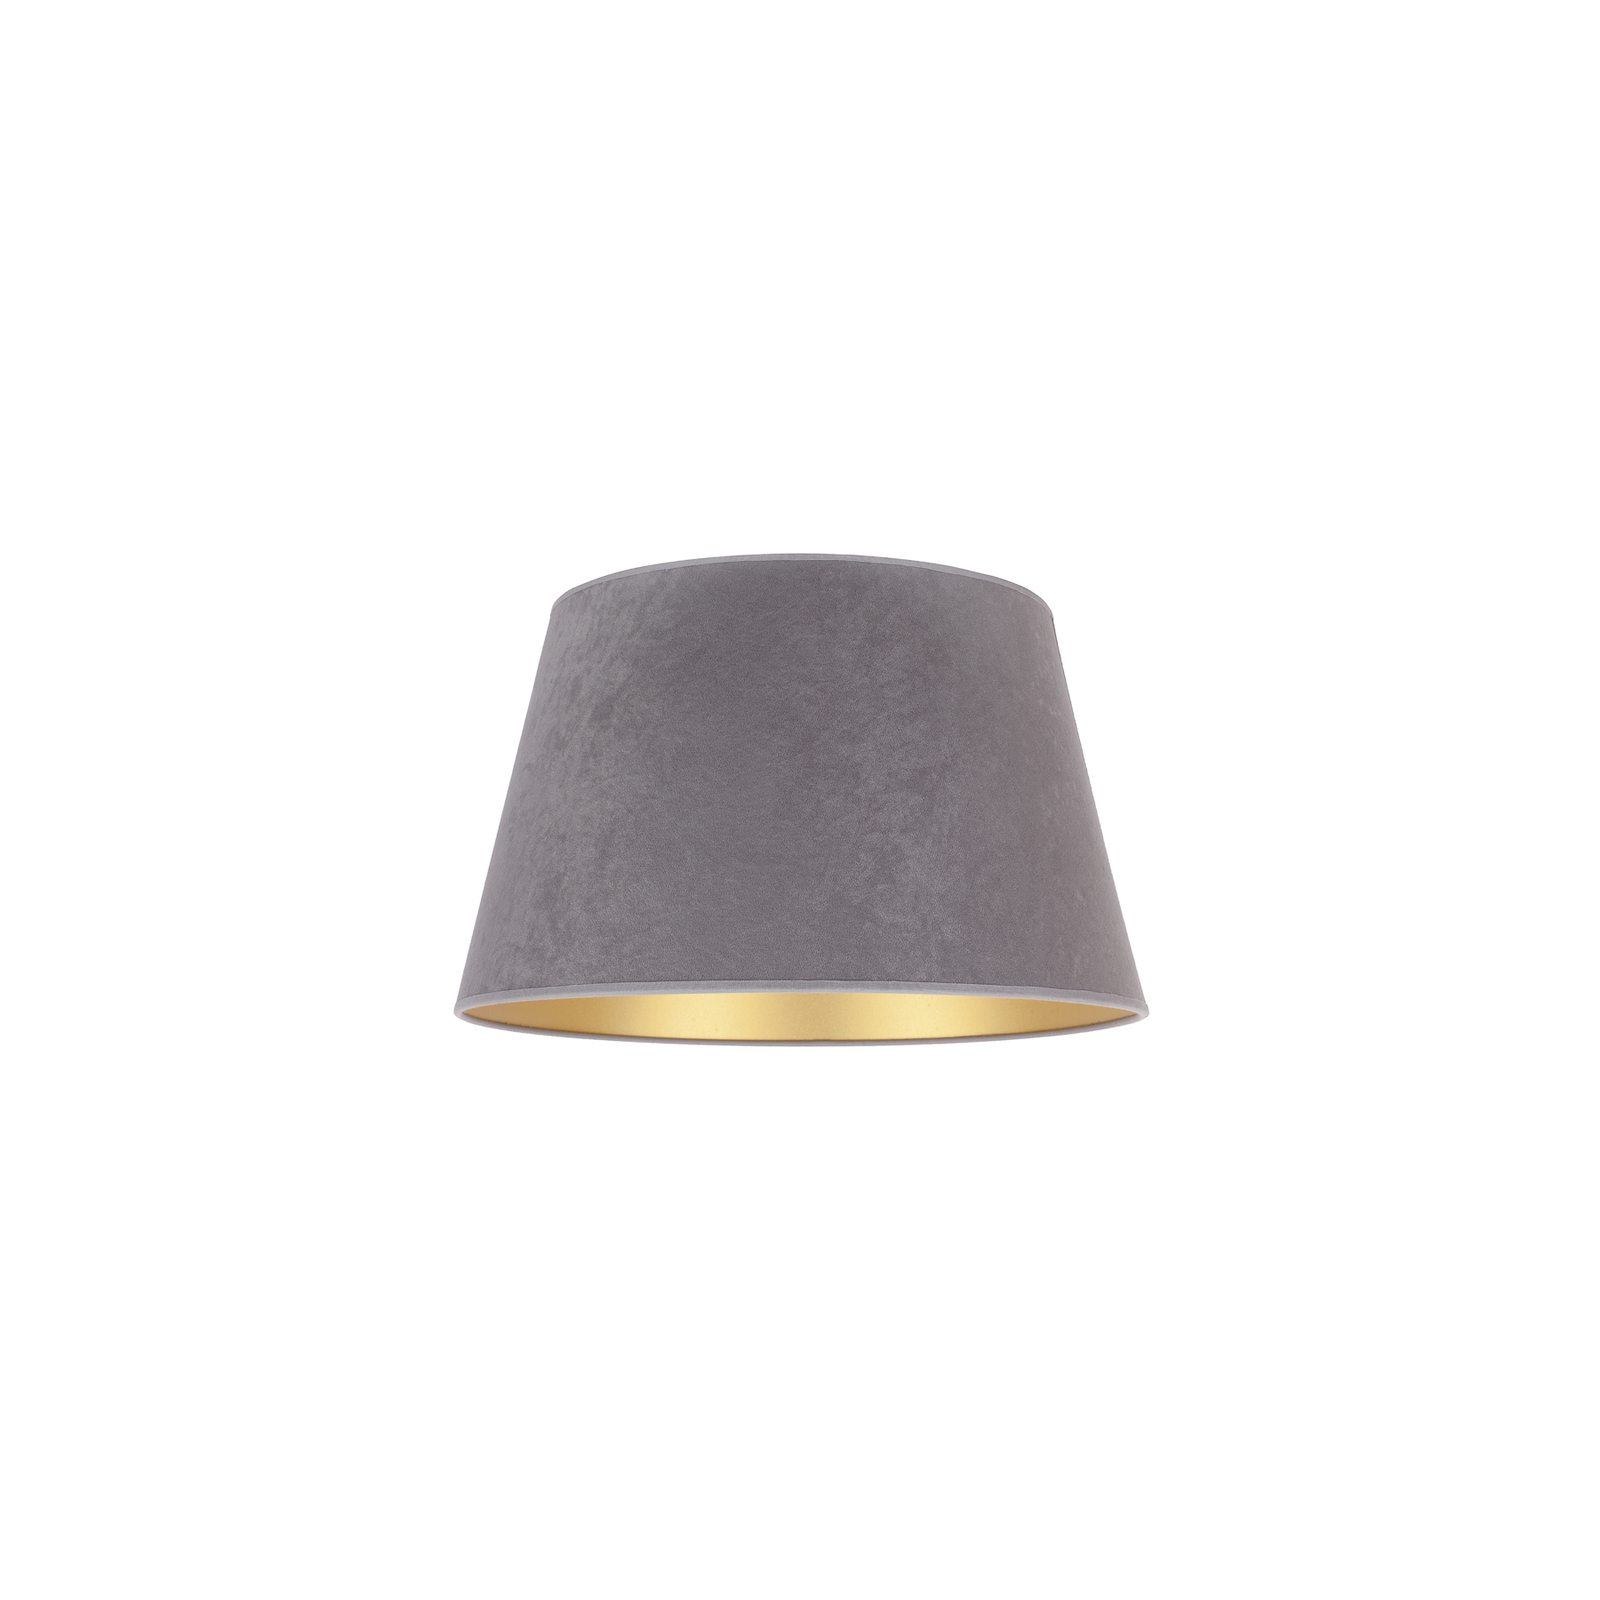 Stínidlo na lampu Cone výška 18 cm, šedá/zlatá